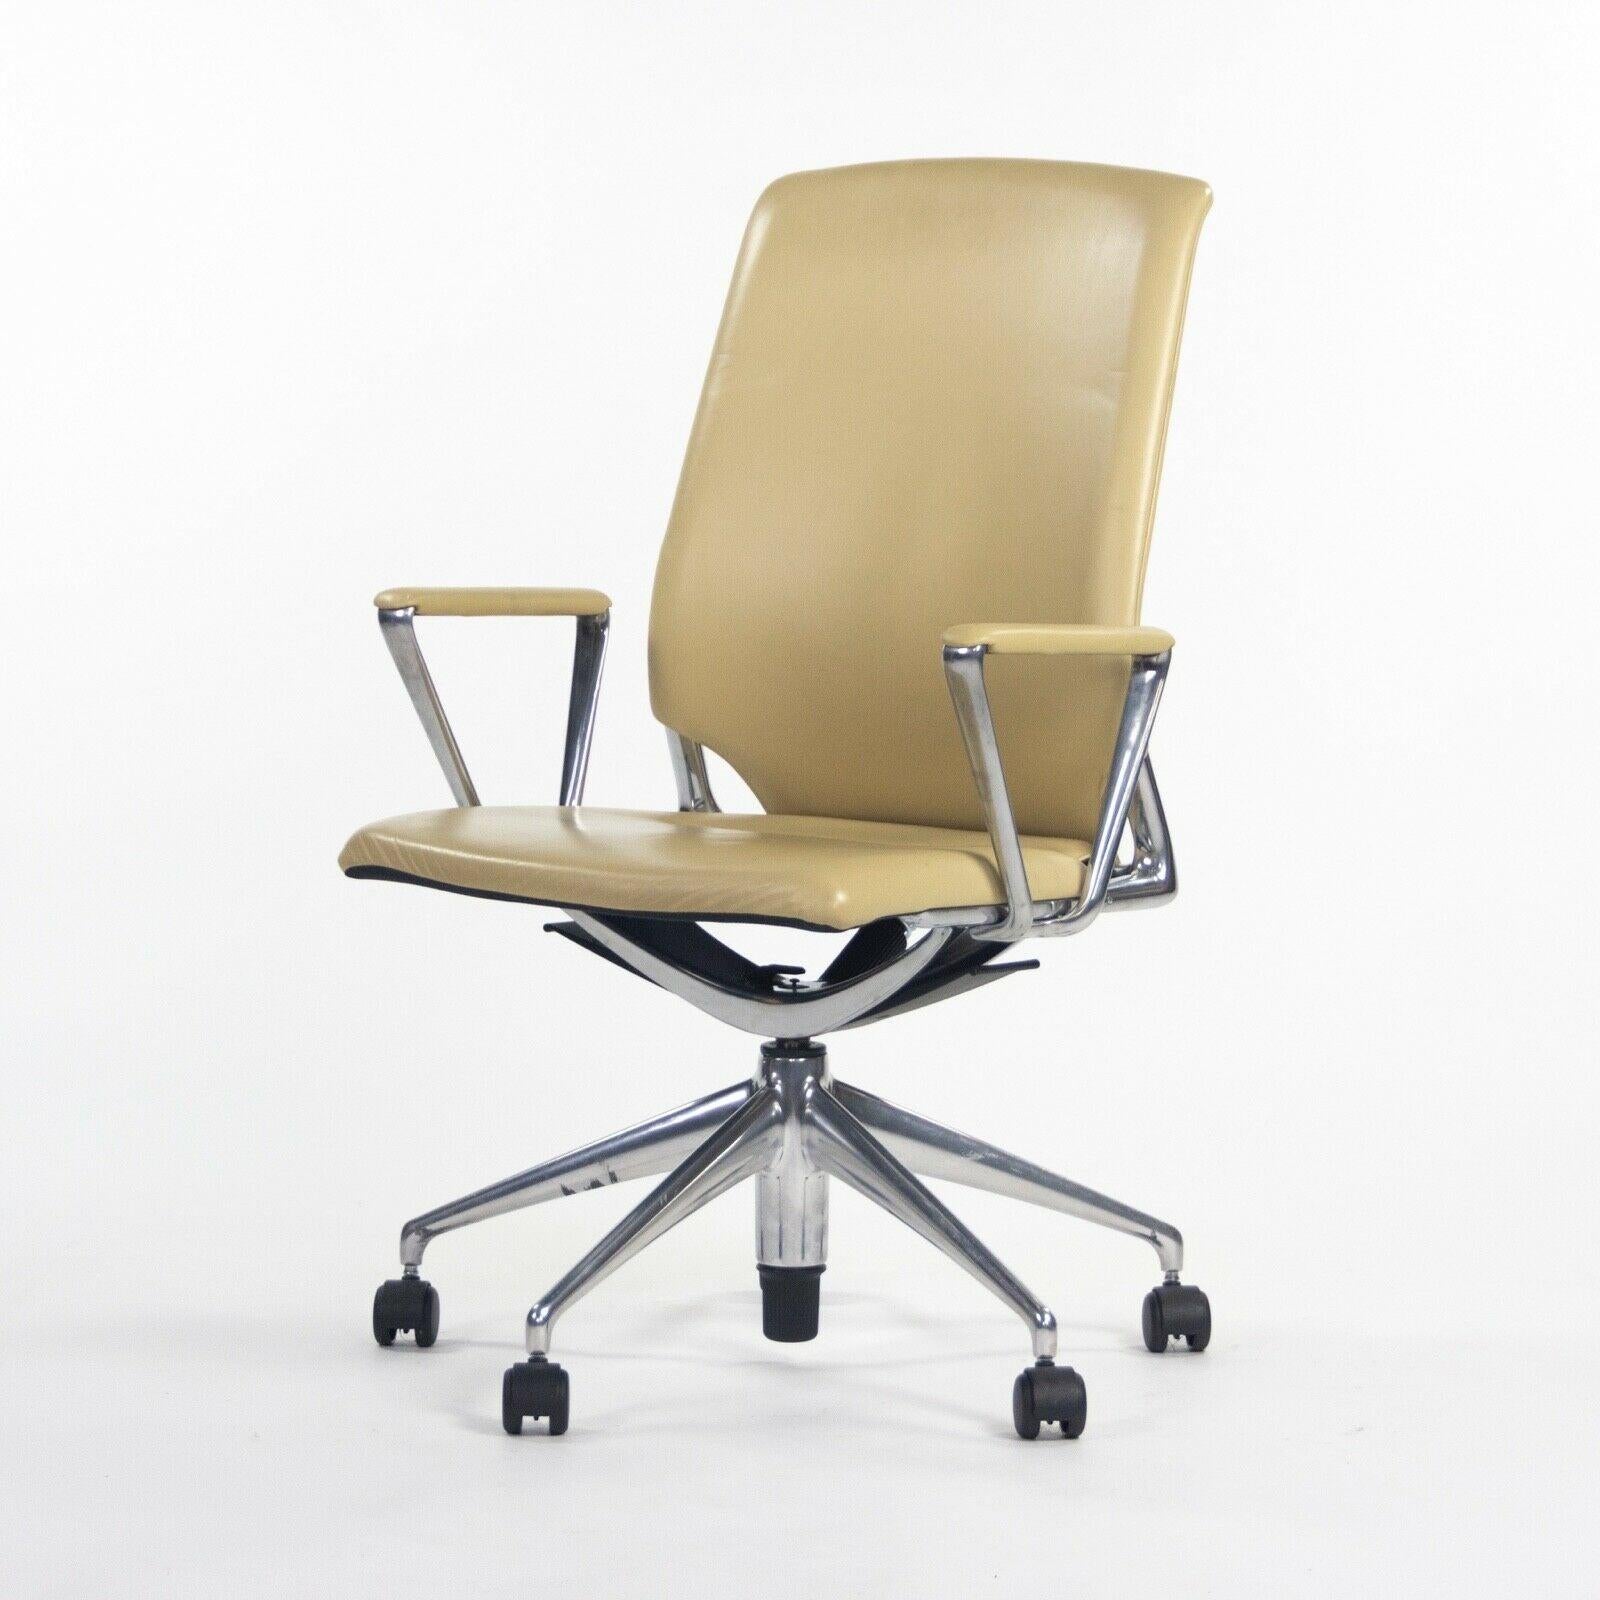 2011 Vitra Meda by Alberto Meda Desk Chair Tan Full Leather For Sale 1